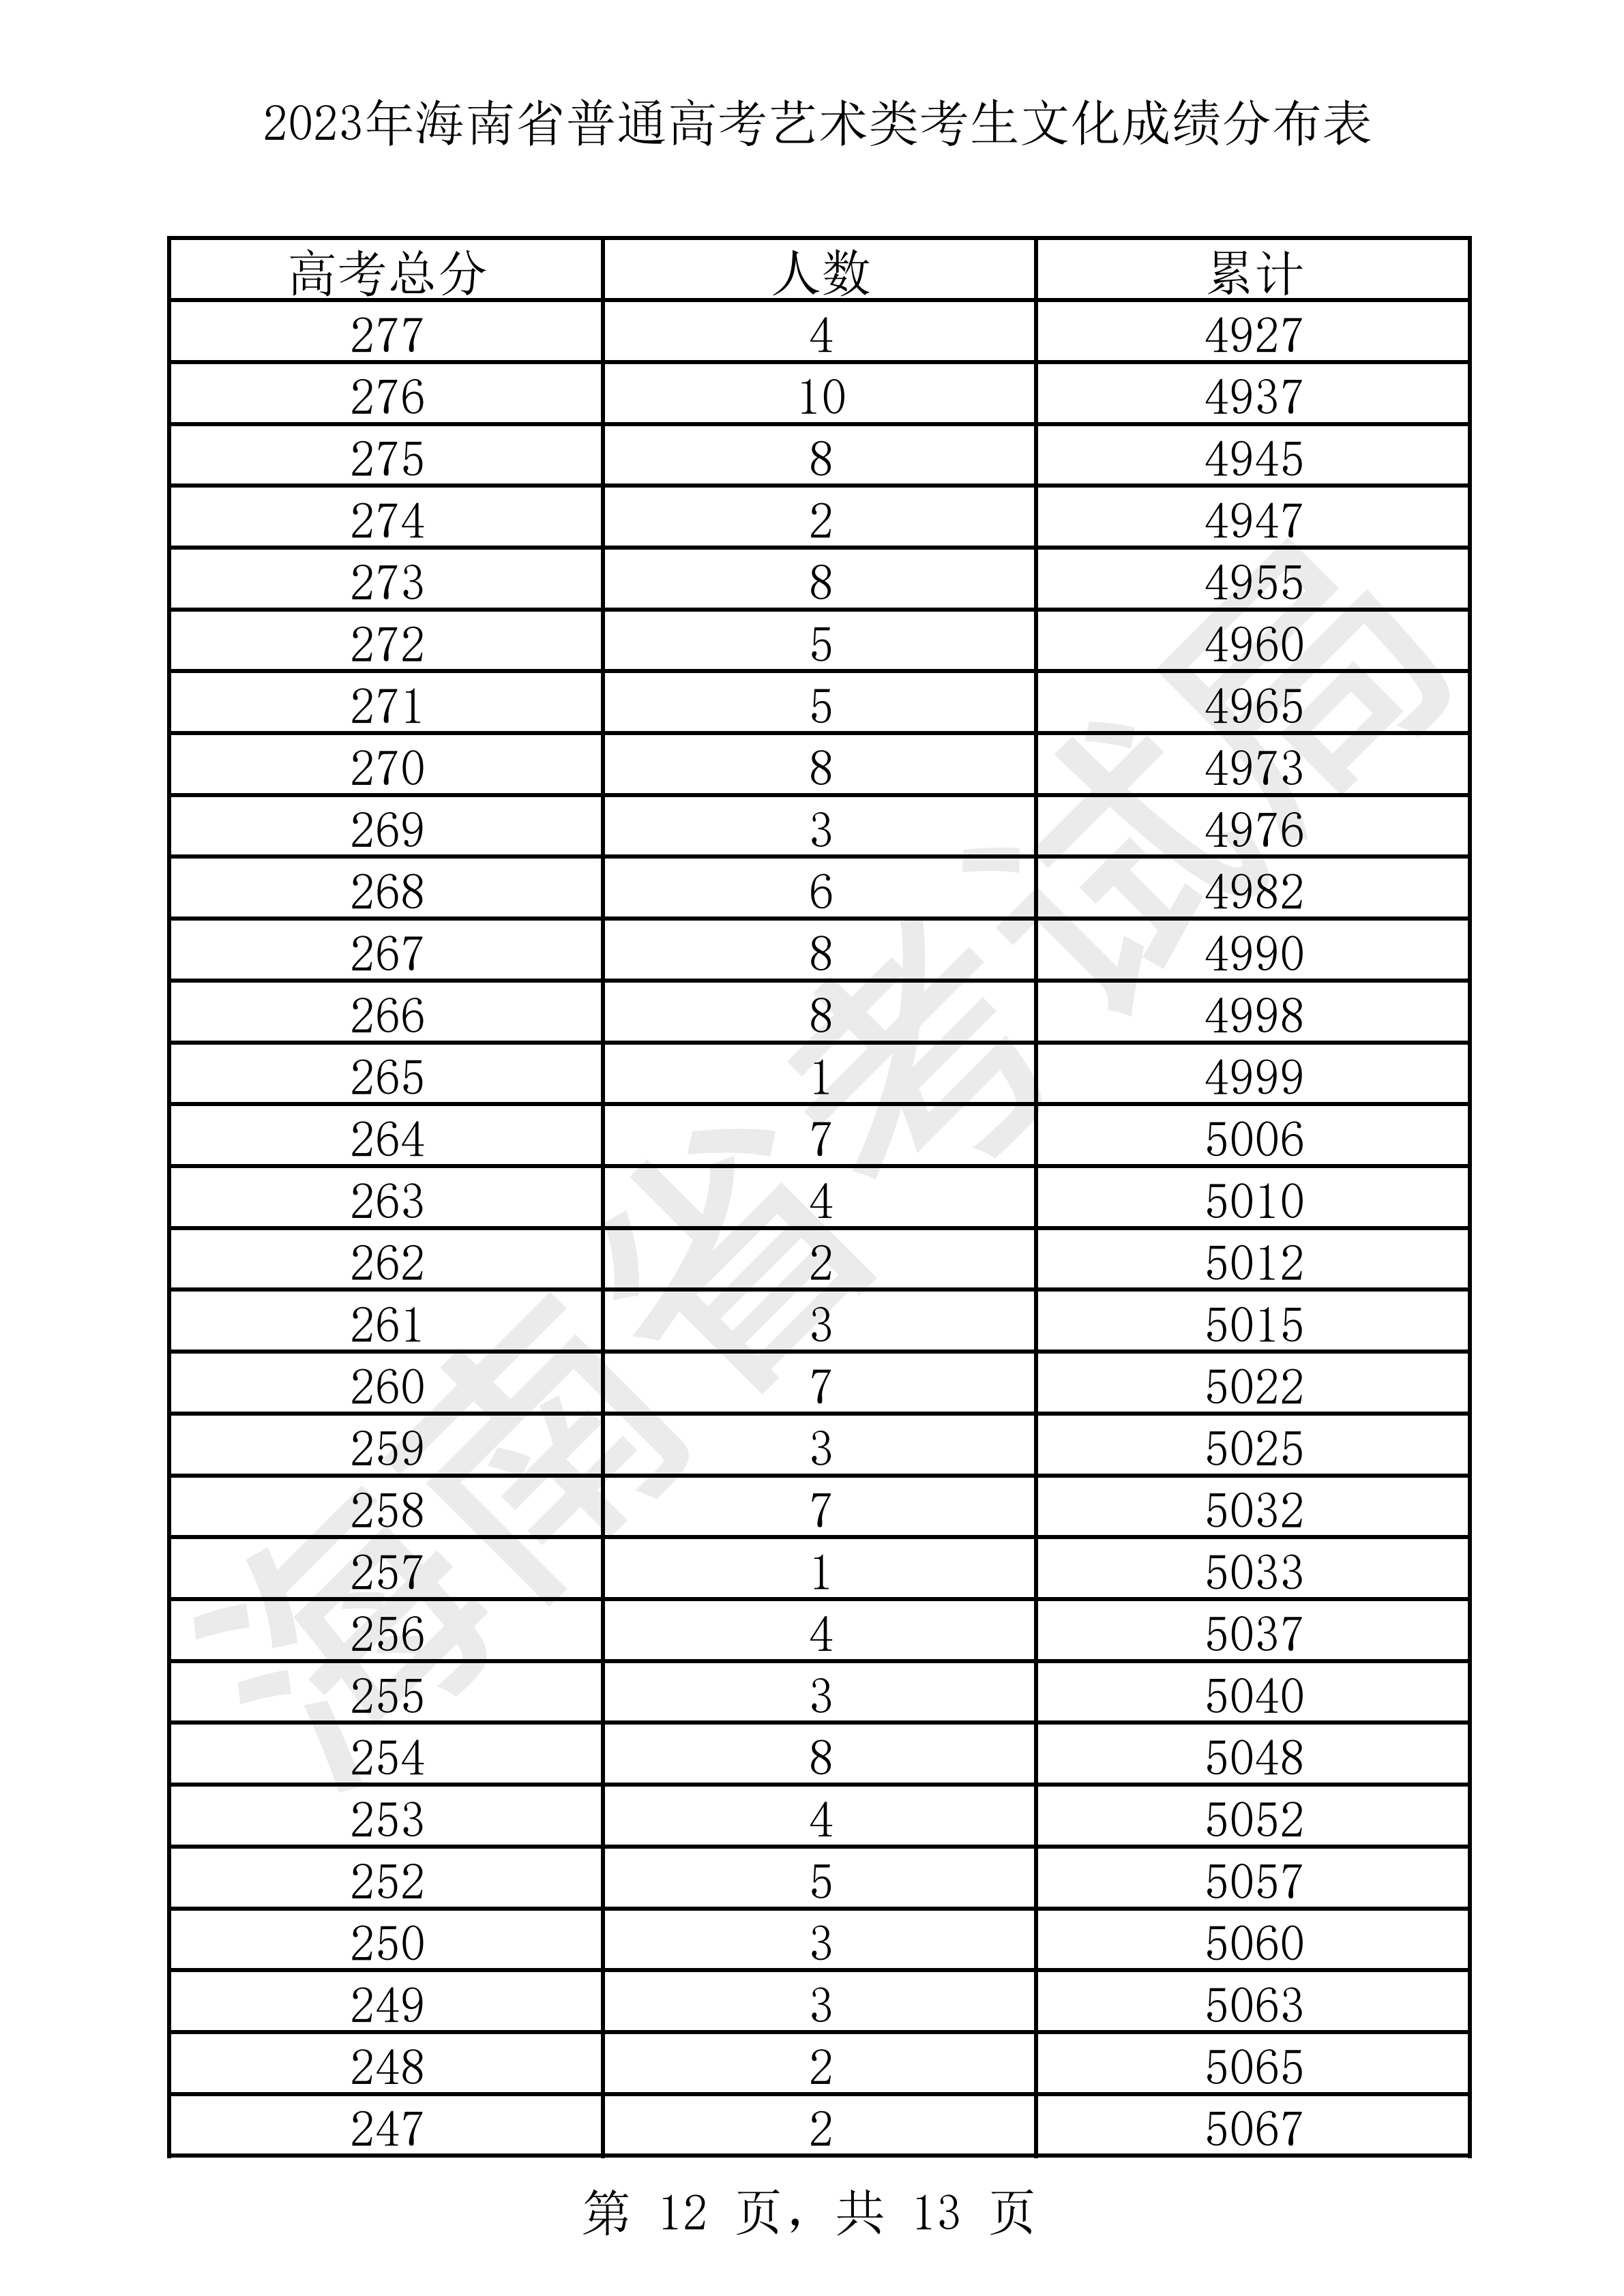 2023年海南省普通高考藝術類考生文化成績分布表 